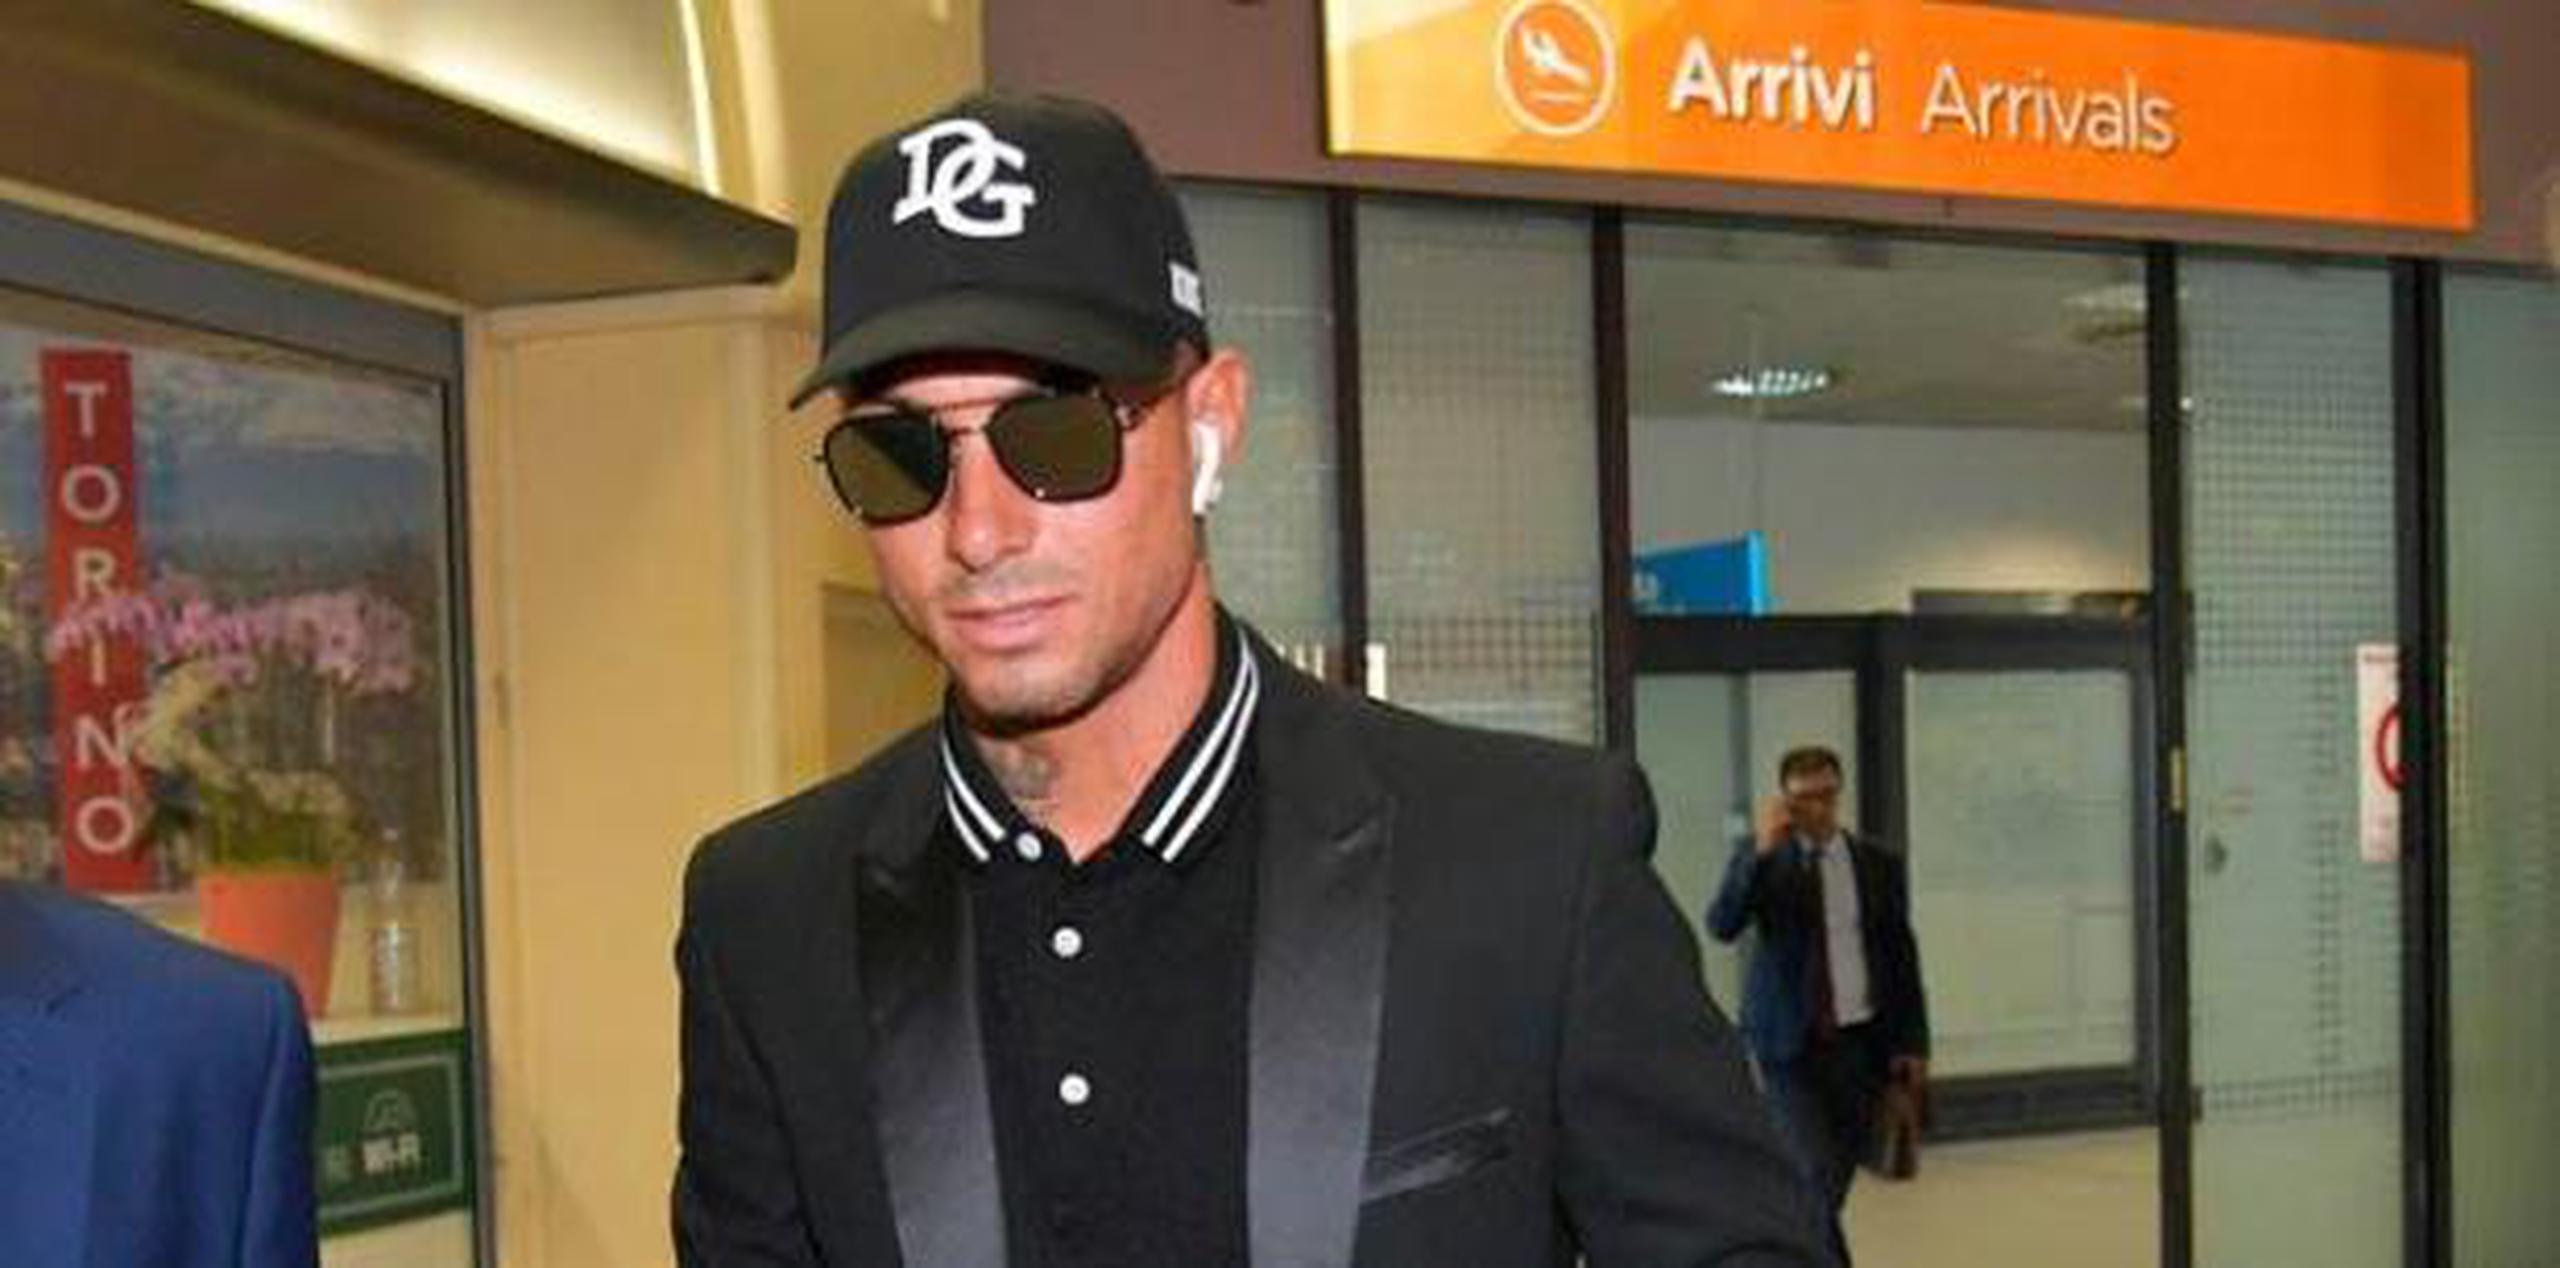 Los lentes, la elegancia y su actitud segura lo hizo comparable al crack portugués. (Facebook / Torino Football Club)